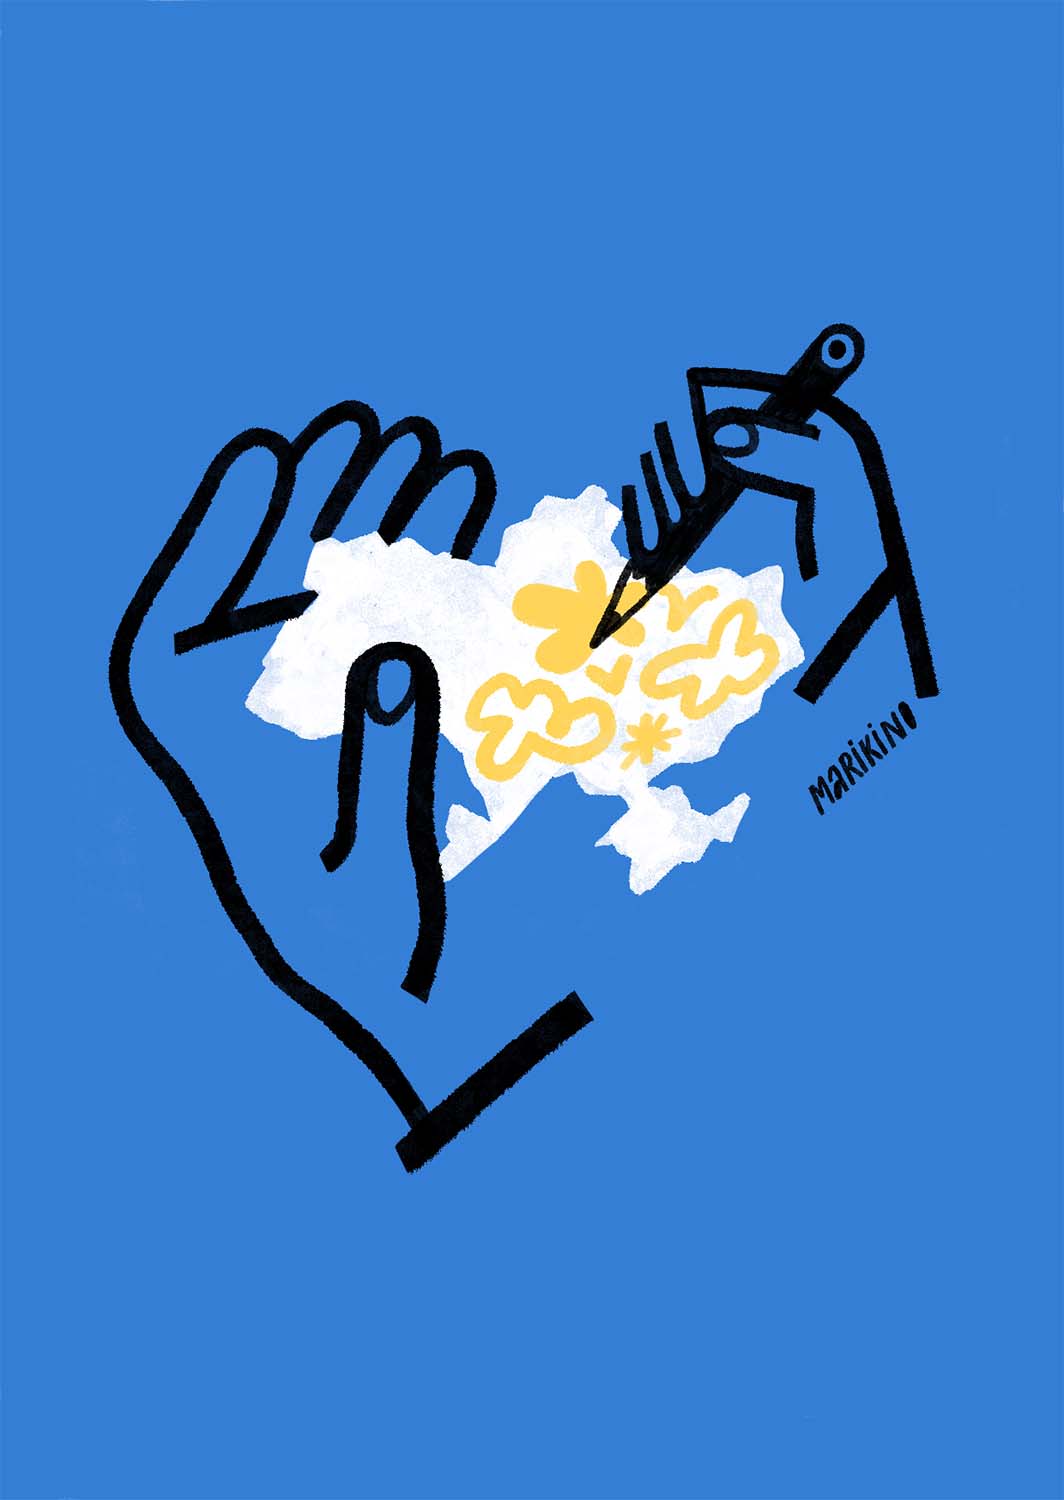 Артрозіграші фонду «Воля та Людяність»: як NK, Наталія Могилевська та інші свідомі українці допомагають ЗСУ